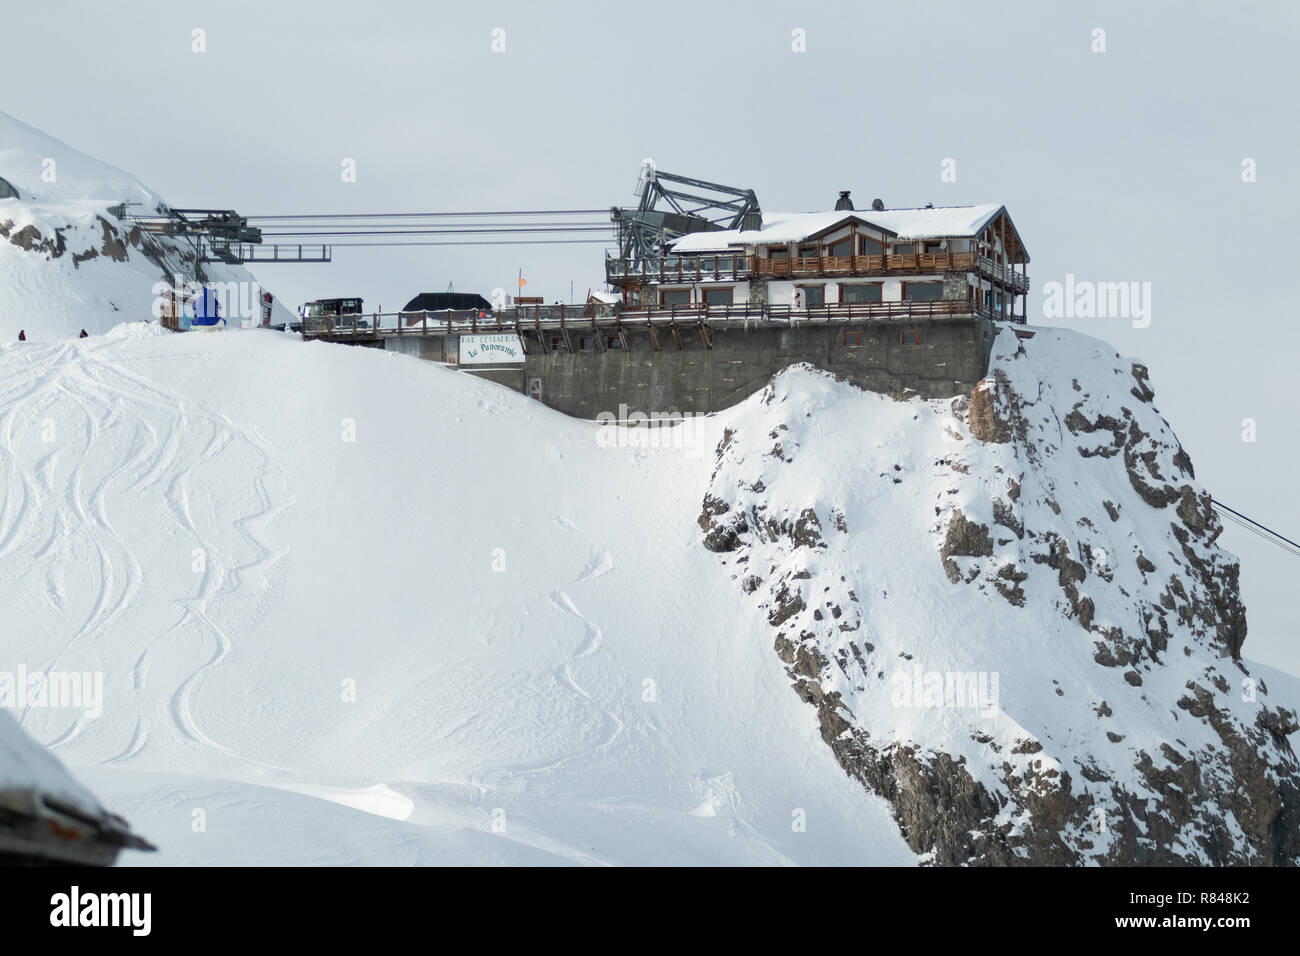 Località sciistica di Courchevel Les 3 Vallees Rhone Alpes Savoie Francia La Saulire funivia per la parte superiore a 2800 mt. 3 Valli Alpi Winter Resort Foto Stock